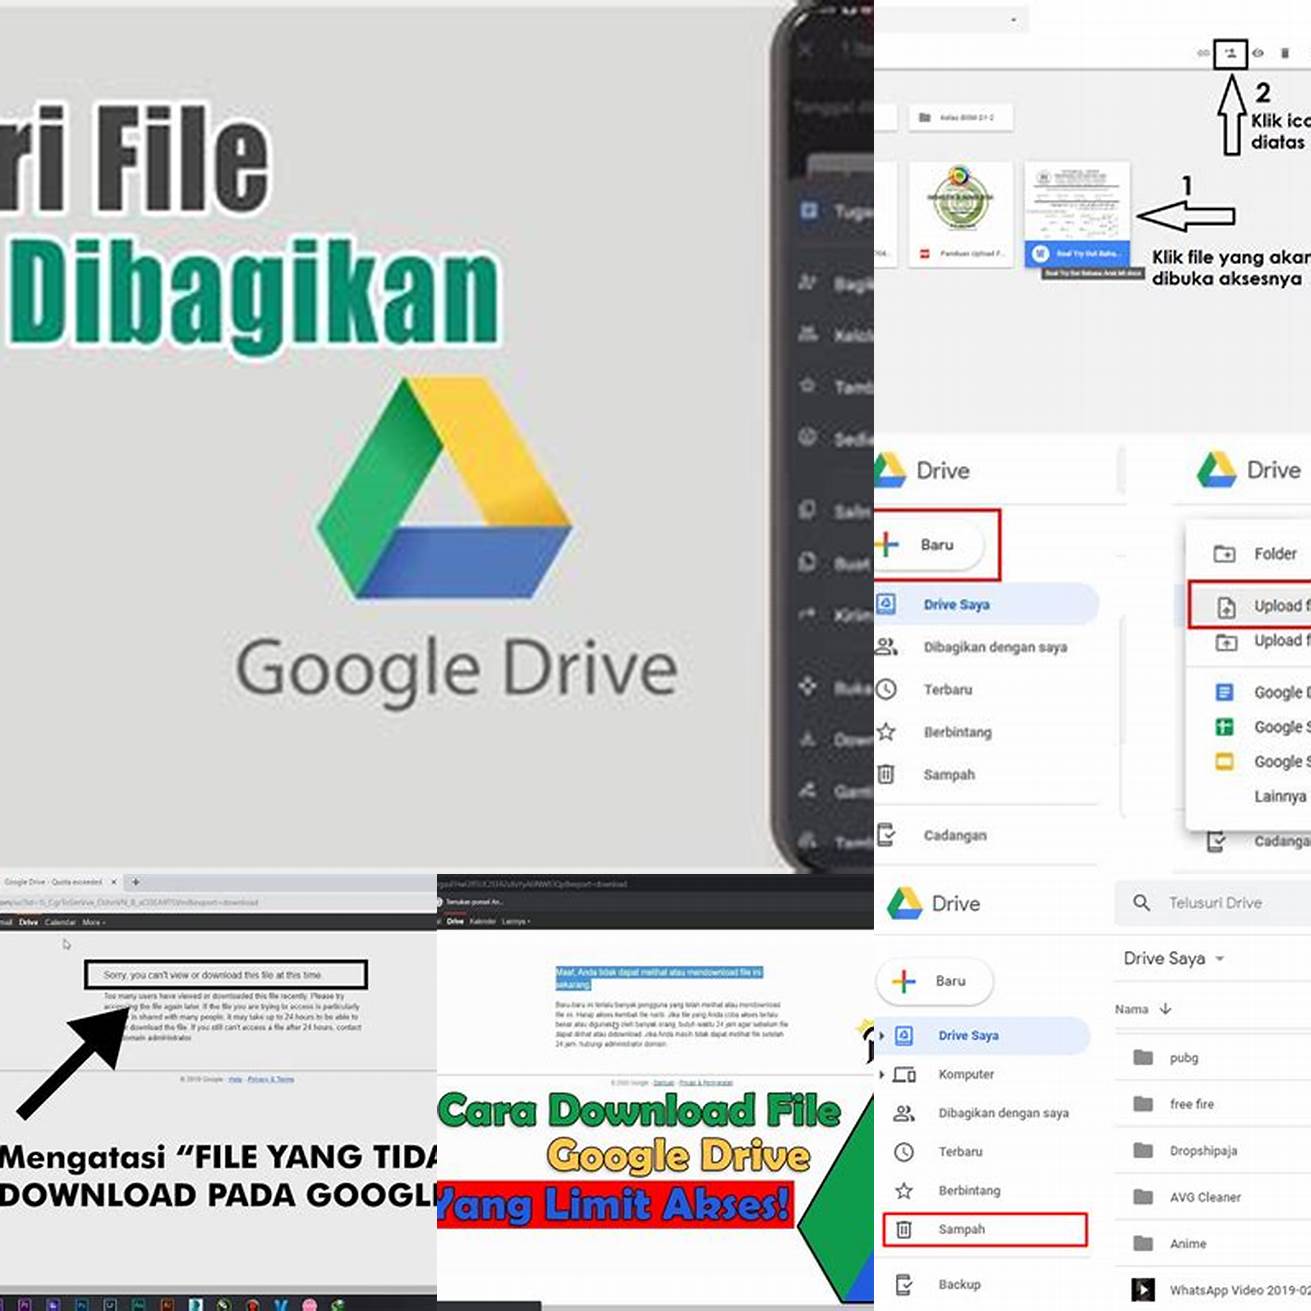 5 Cari file APK Google Drive yang telah Anda unduh